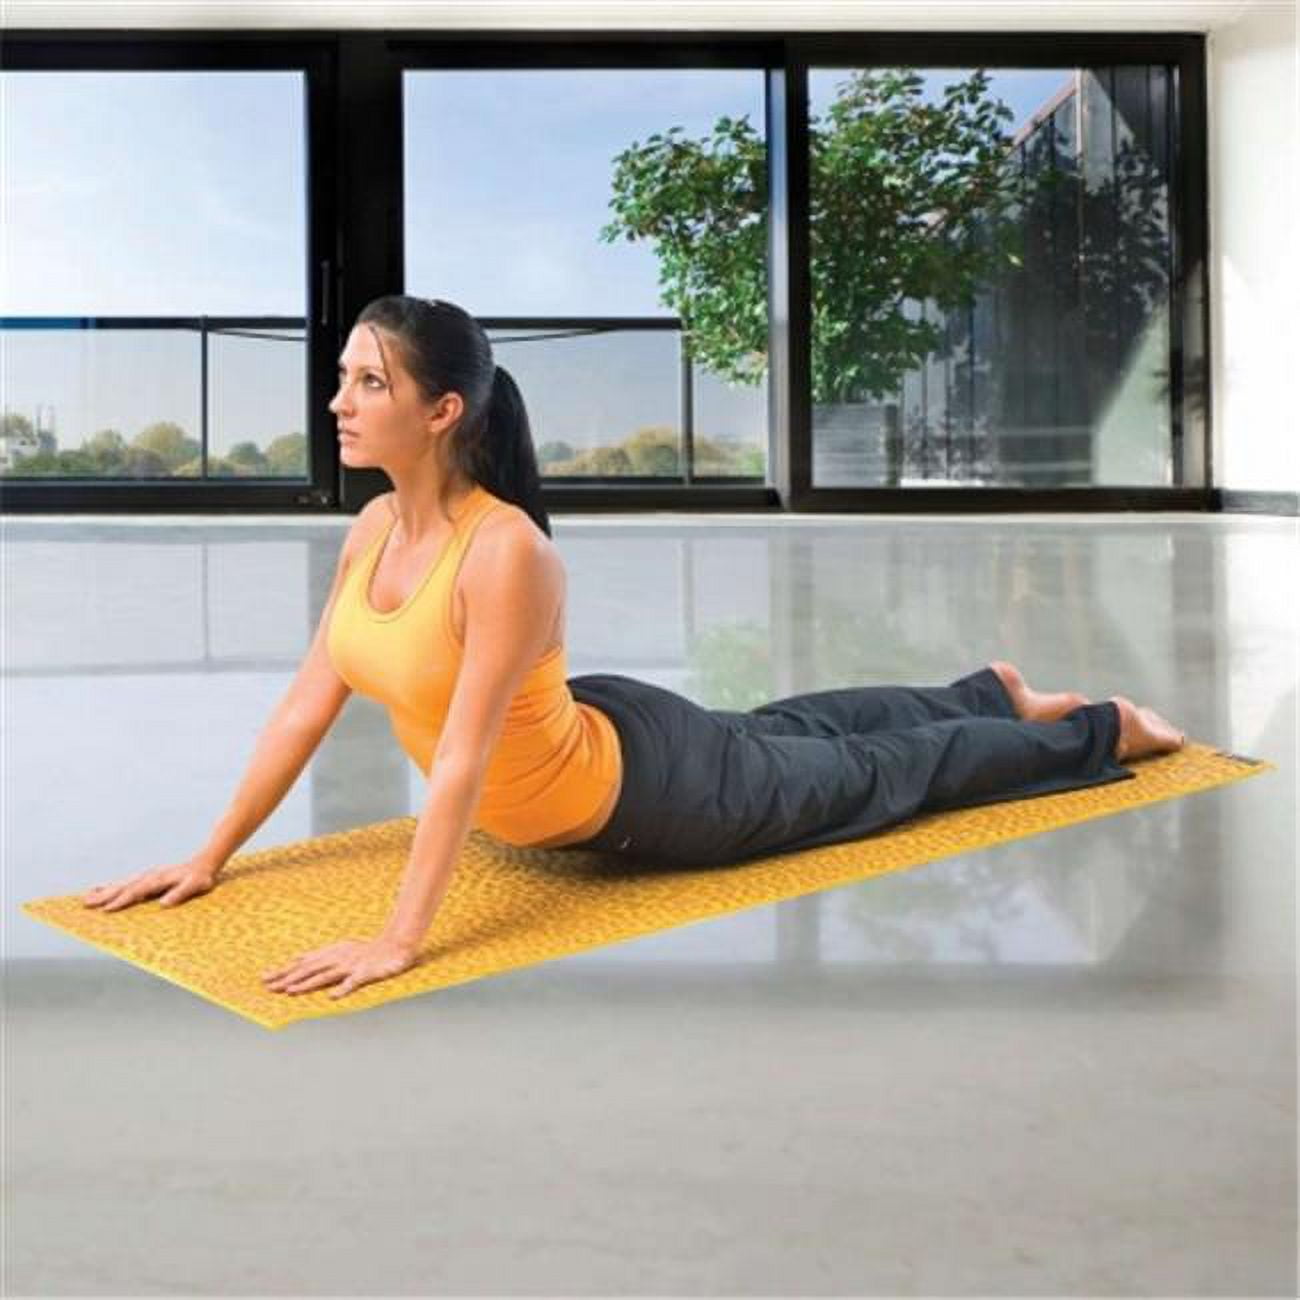 MoKo Yoga Towel, No-Slip Hot Yoga/Pilates Mat Towel with Corner Pocket,  Quick Dry, 27 in * 74 in , Cyan 